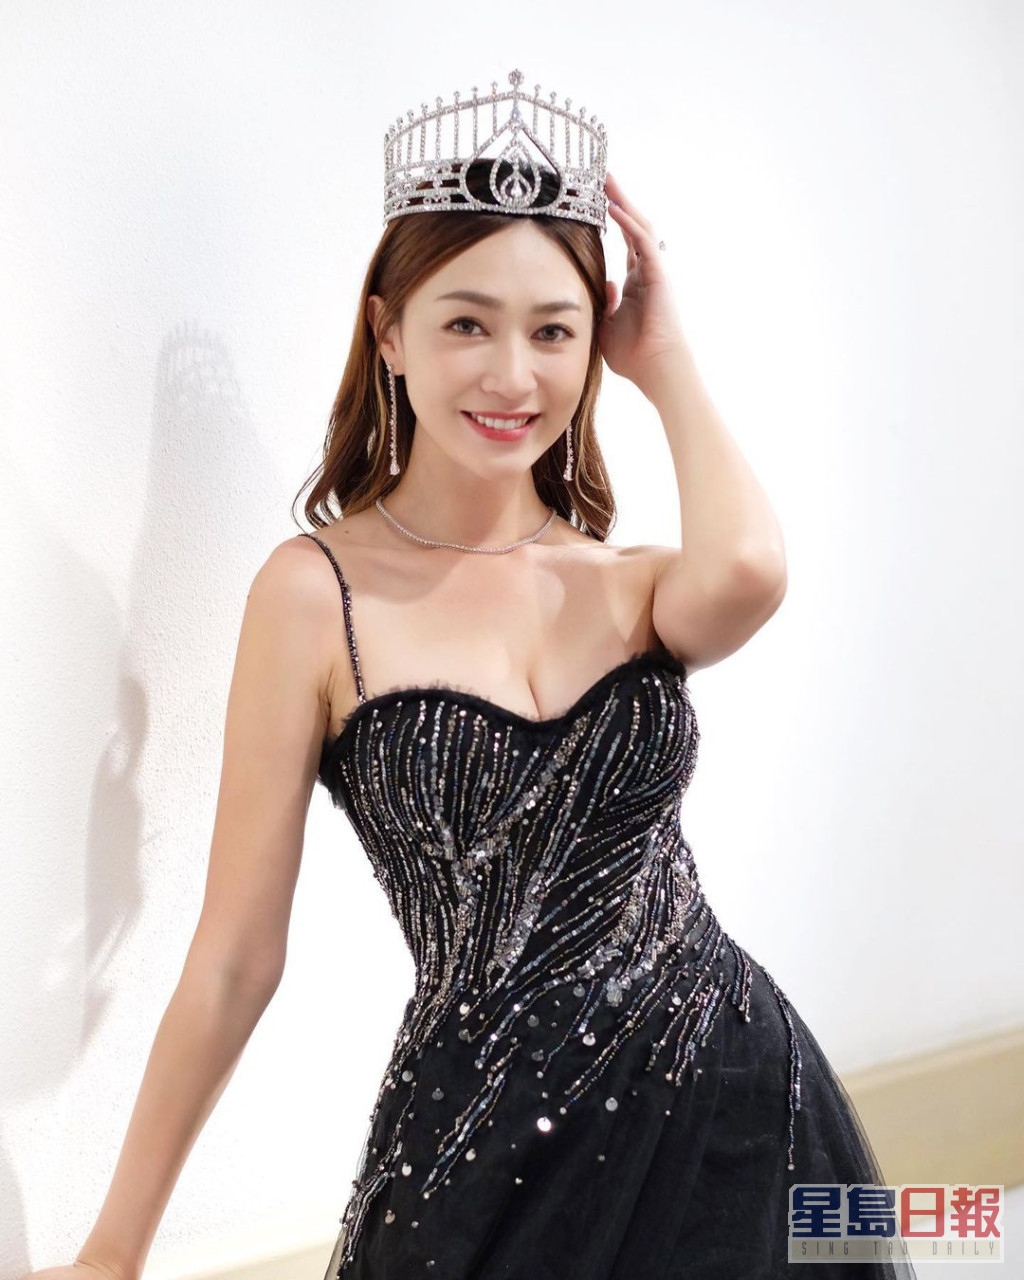 黃嘉雯是《2019年度香港小姐競選》冠軍。